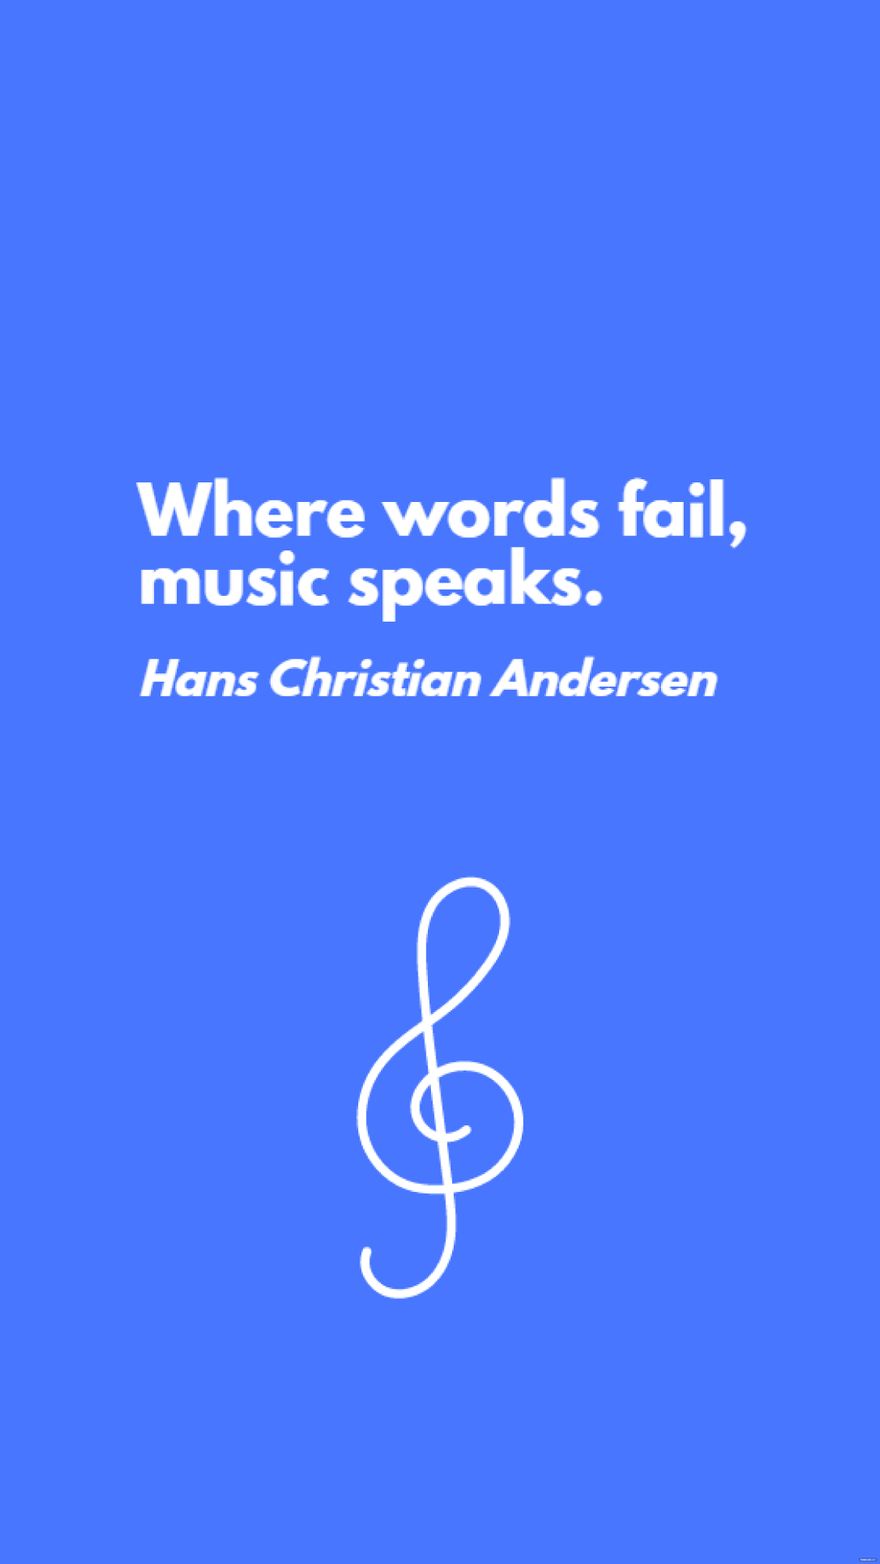 Hans Christian Andersen - Where words fail, music speaks.